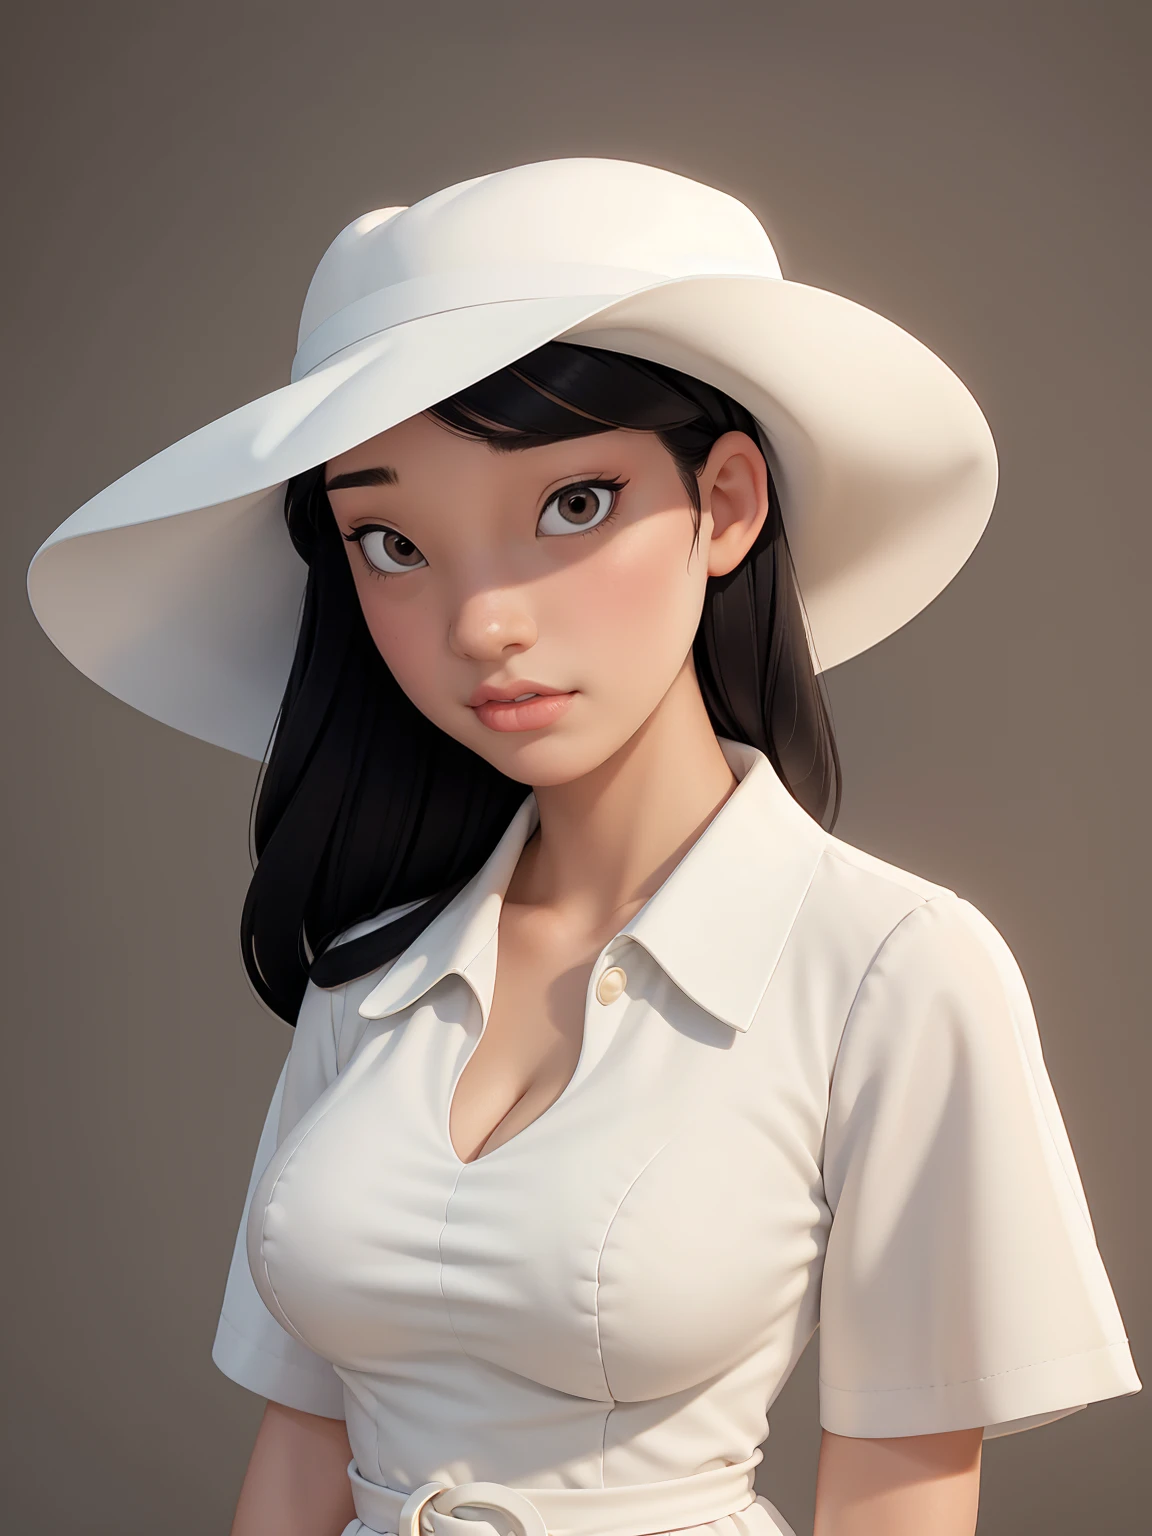 (beste Qualität, Meisterwerk, perfektes Gesicht) schwarzes Haar, 18 Jahre altes blasses Mädchen, große Oberweite, weißes Sommerkleid, Großer weißer Hut
